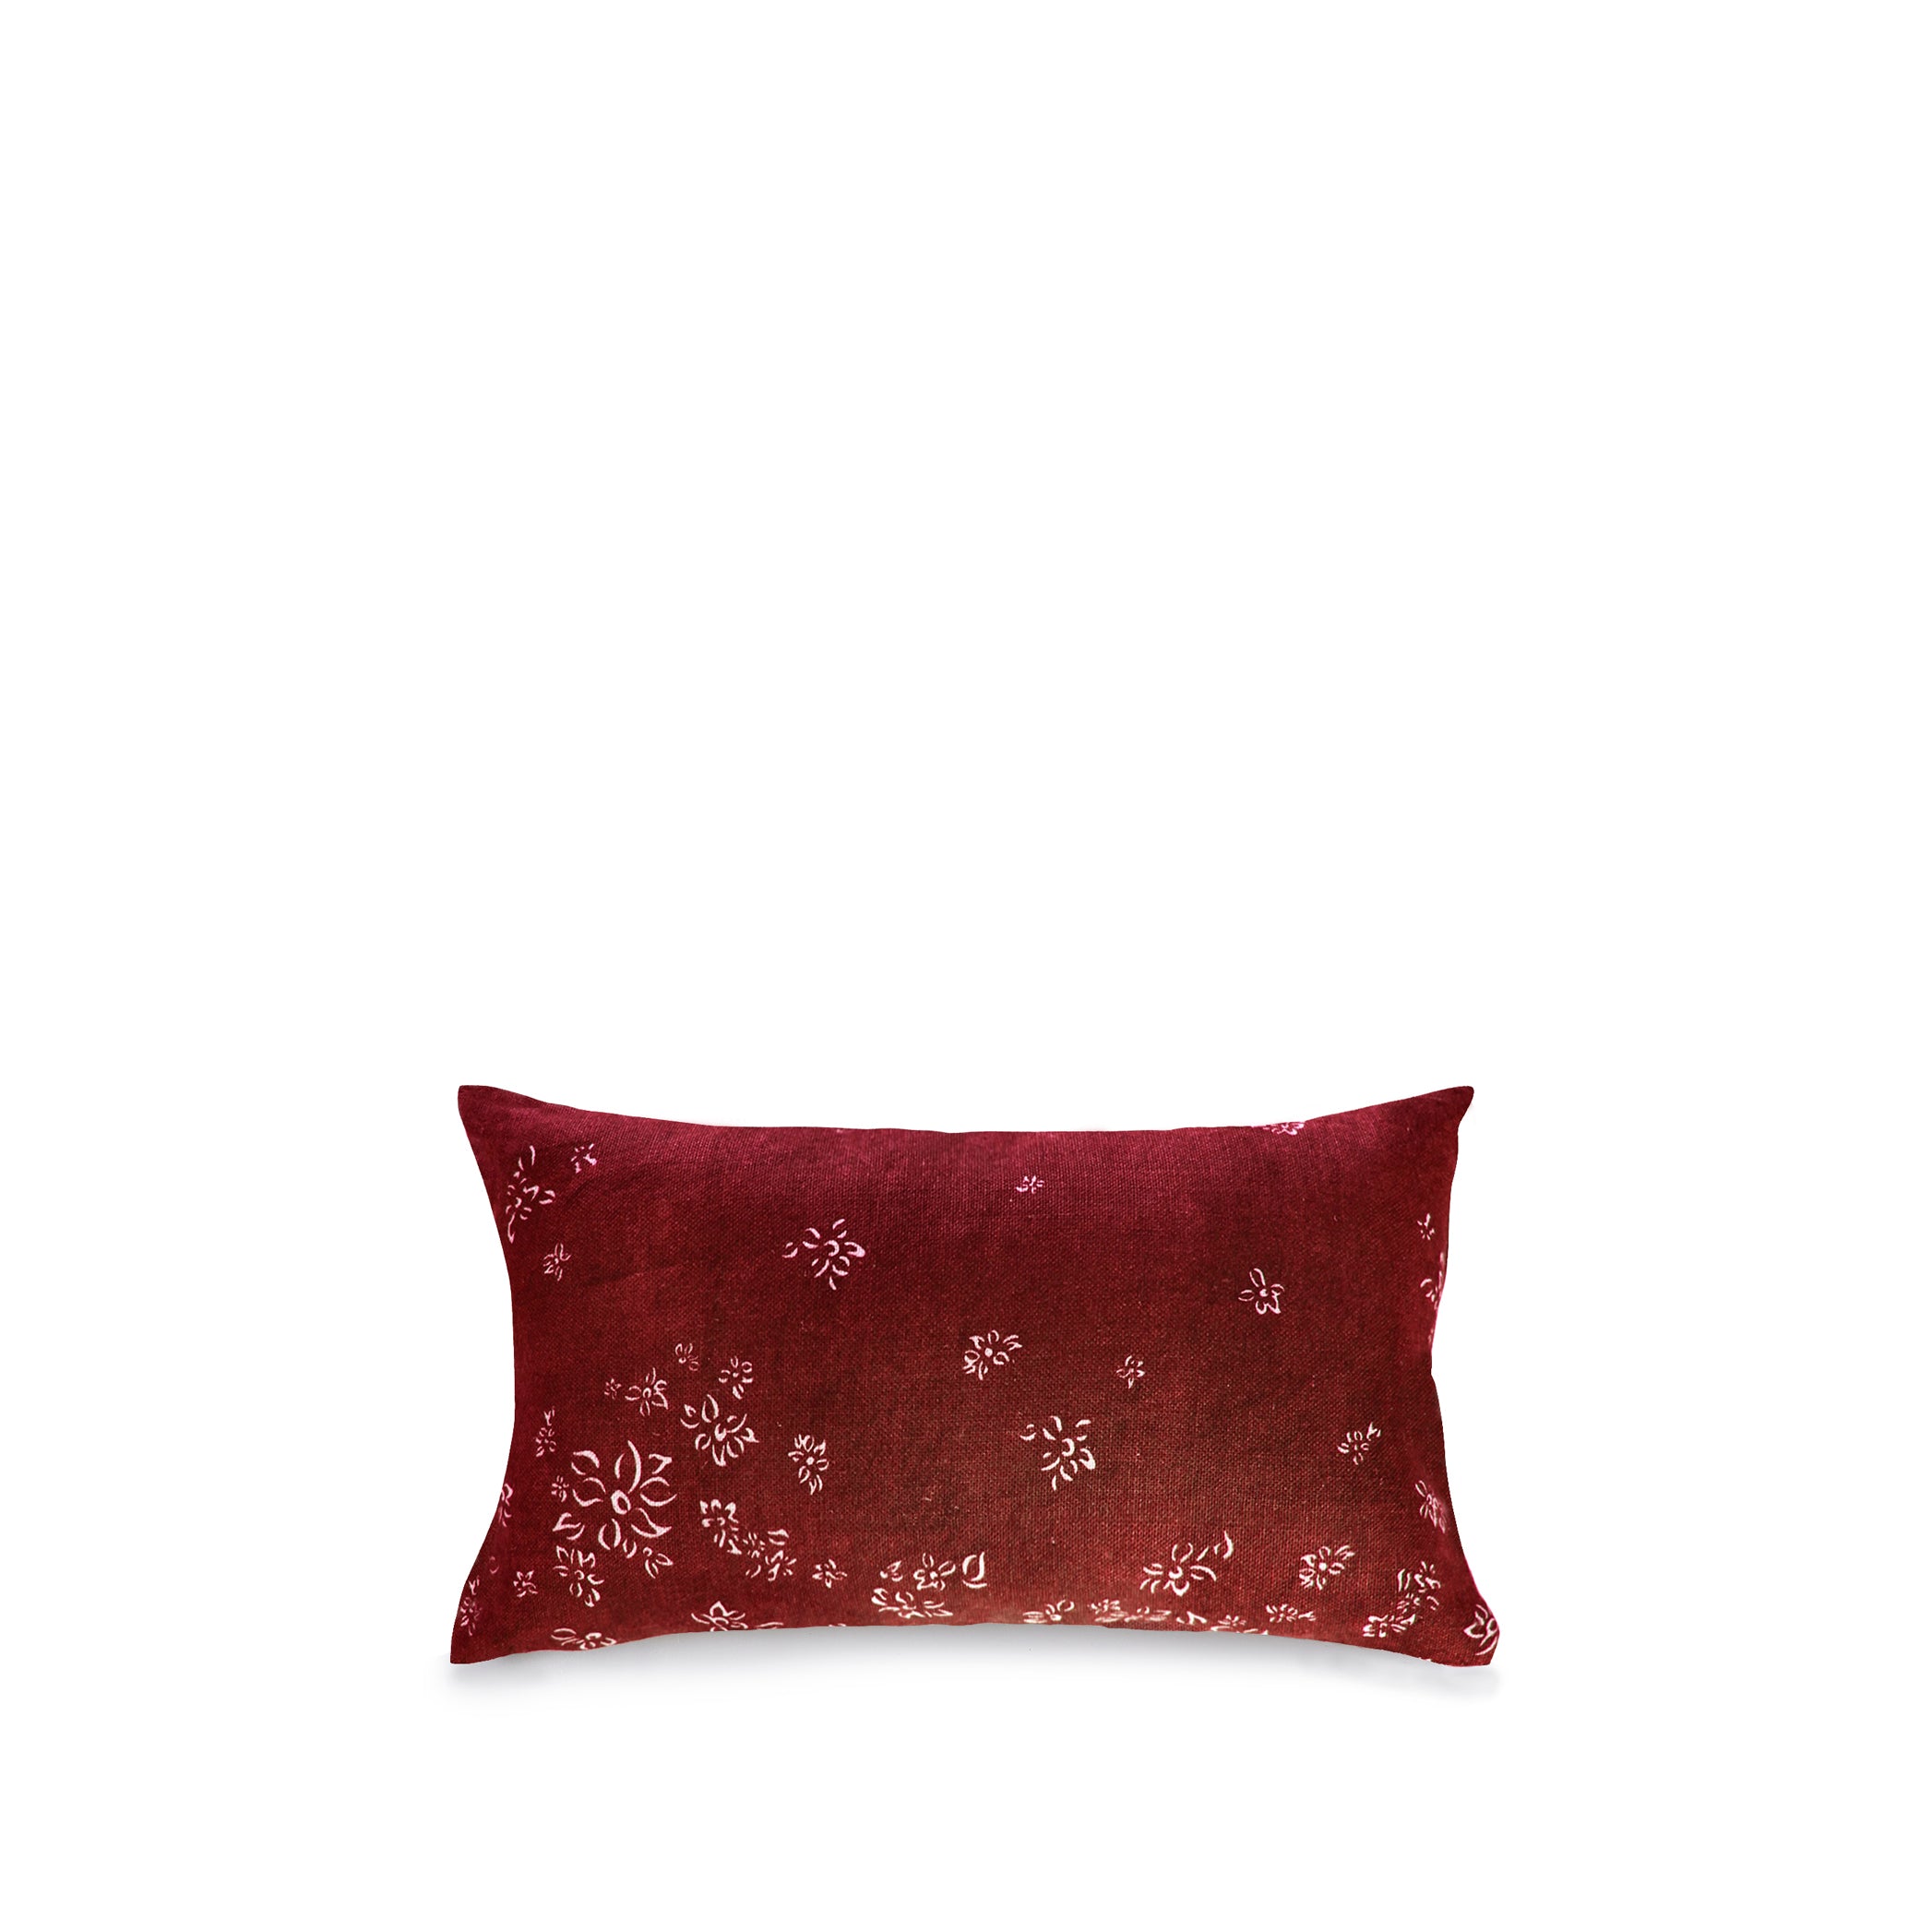 Heavy Linen Falling Flower Cushion in Full Field Claret Red, 50cm x 30cm